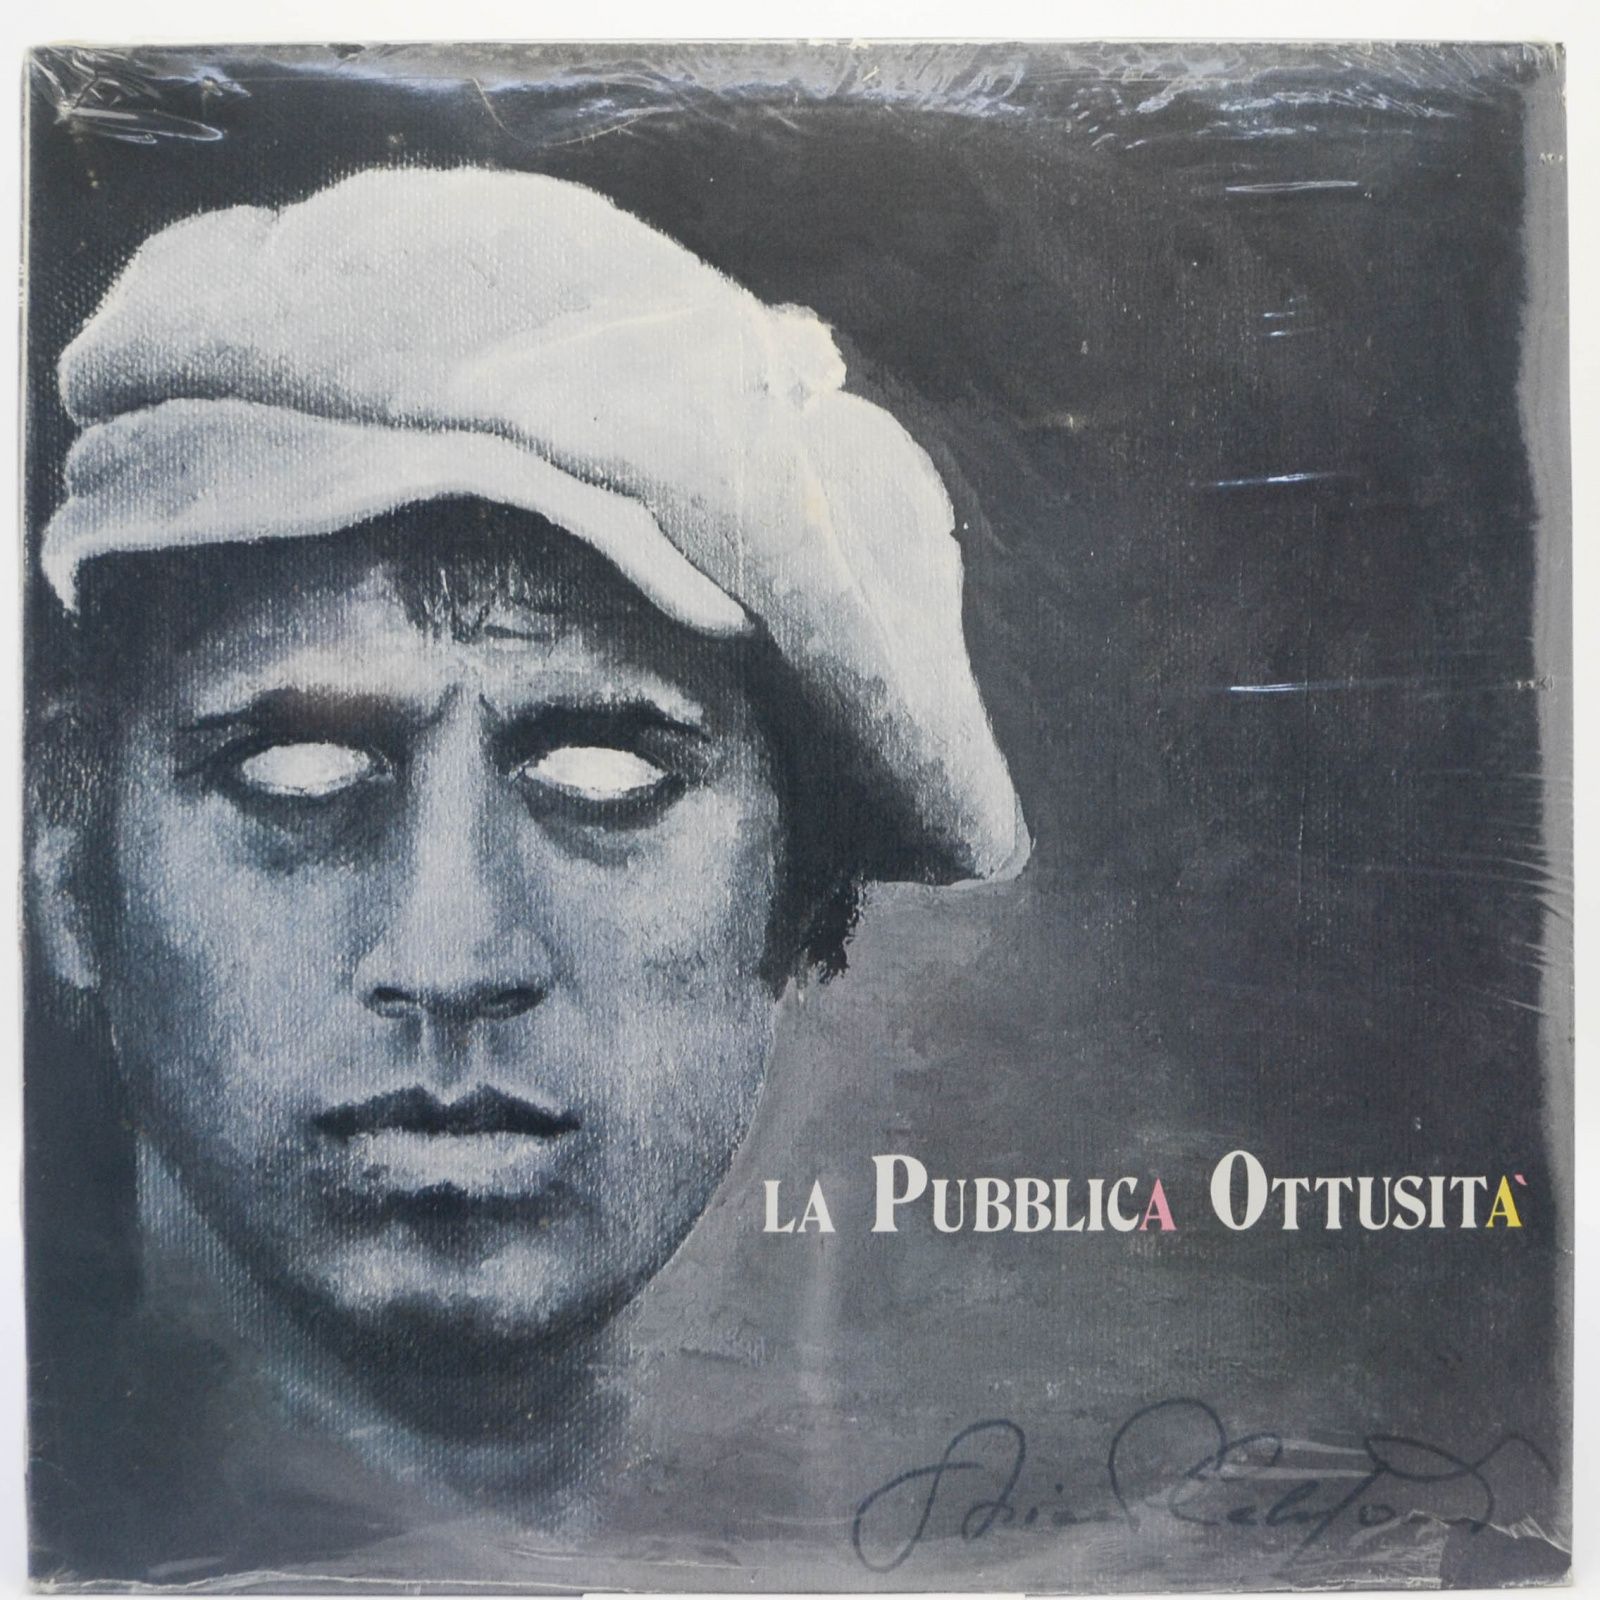 La Pubblica Ottusità (1-st, Italy, Clan), 1987